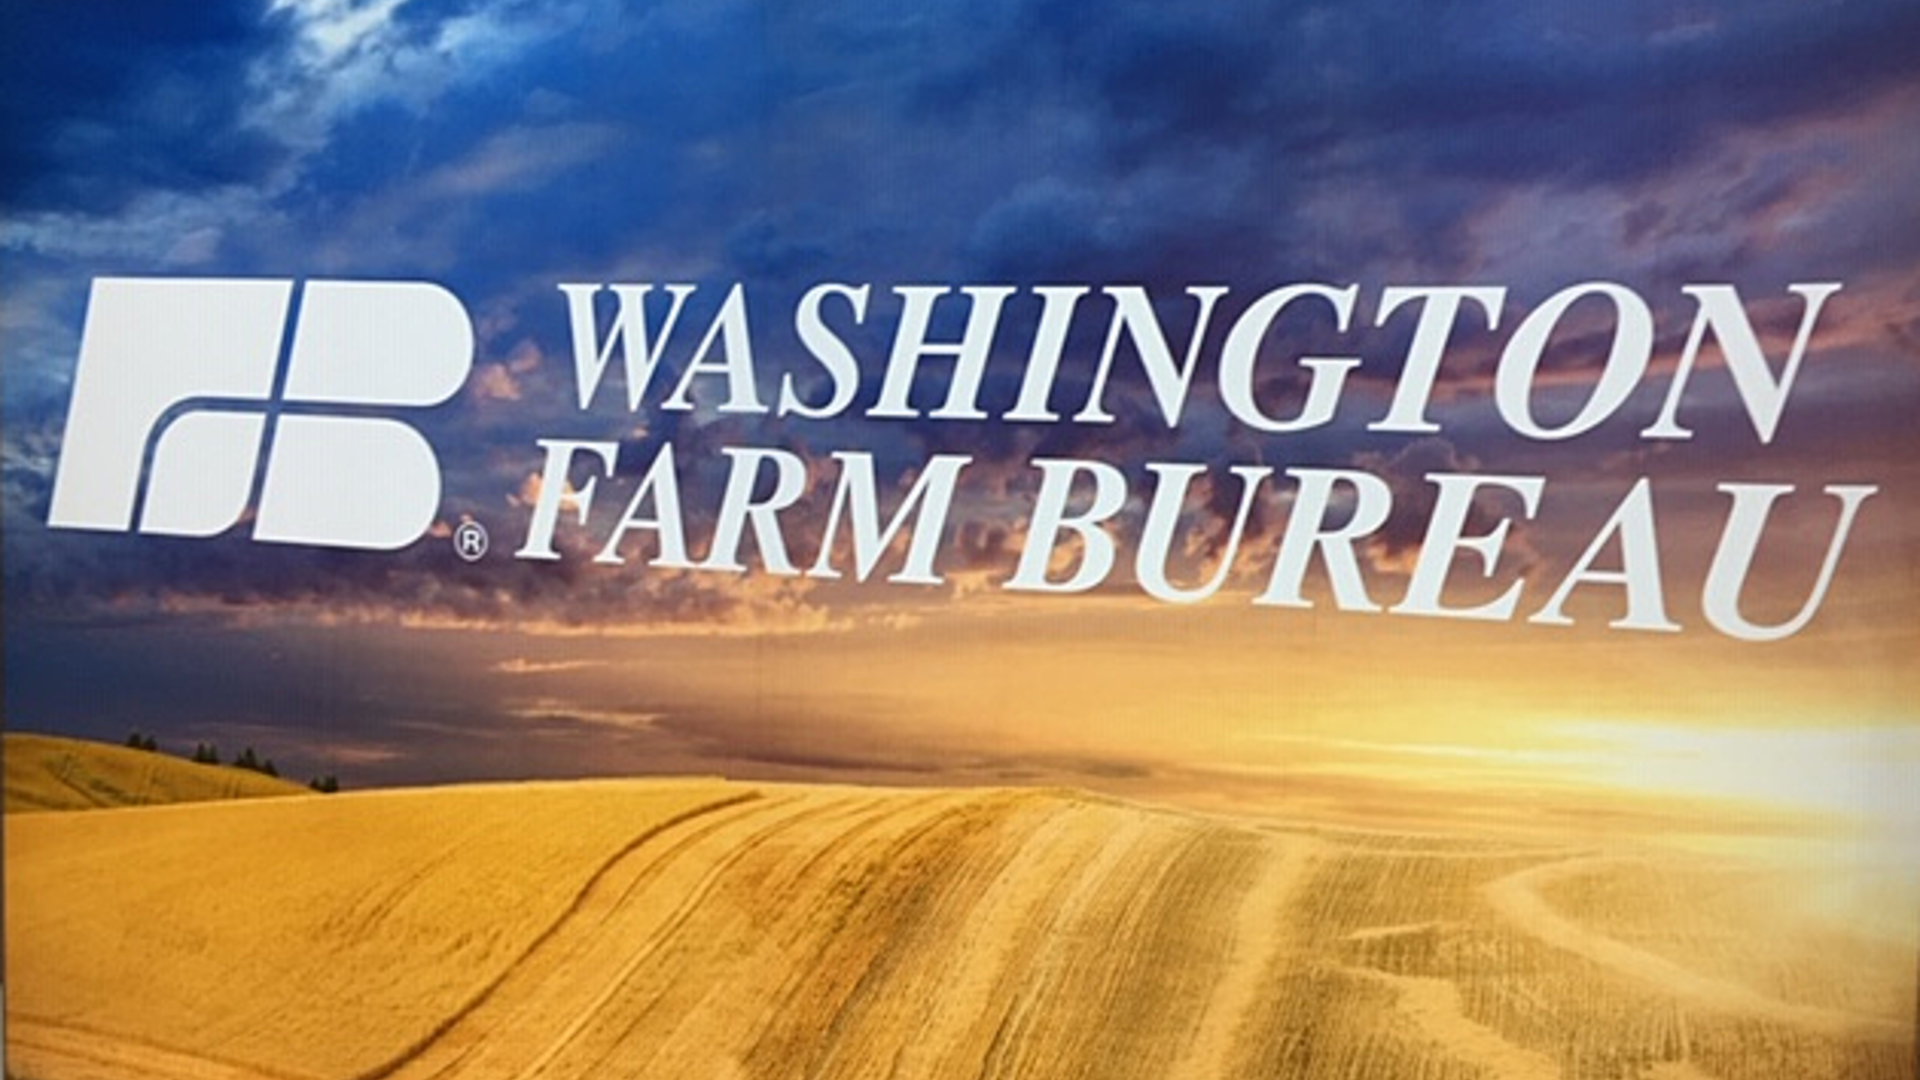 Farm Bureau Membership Pt 2